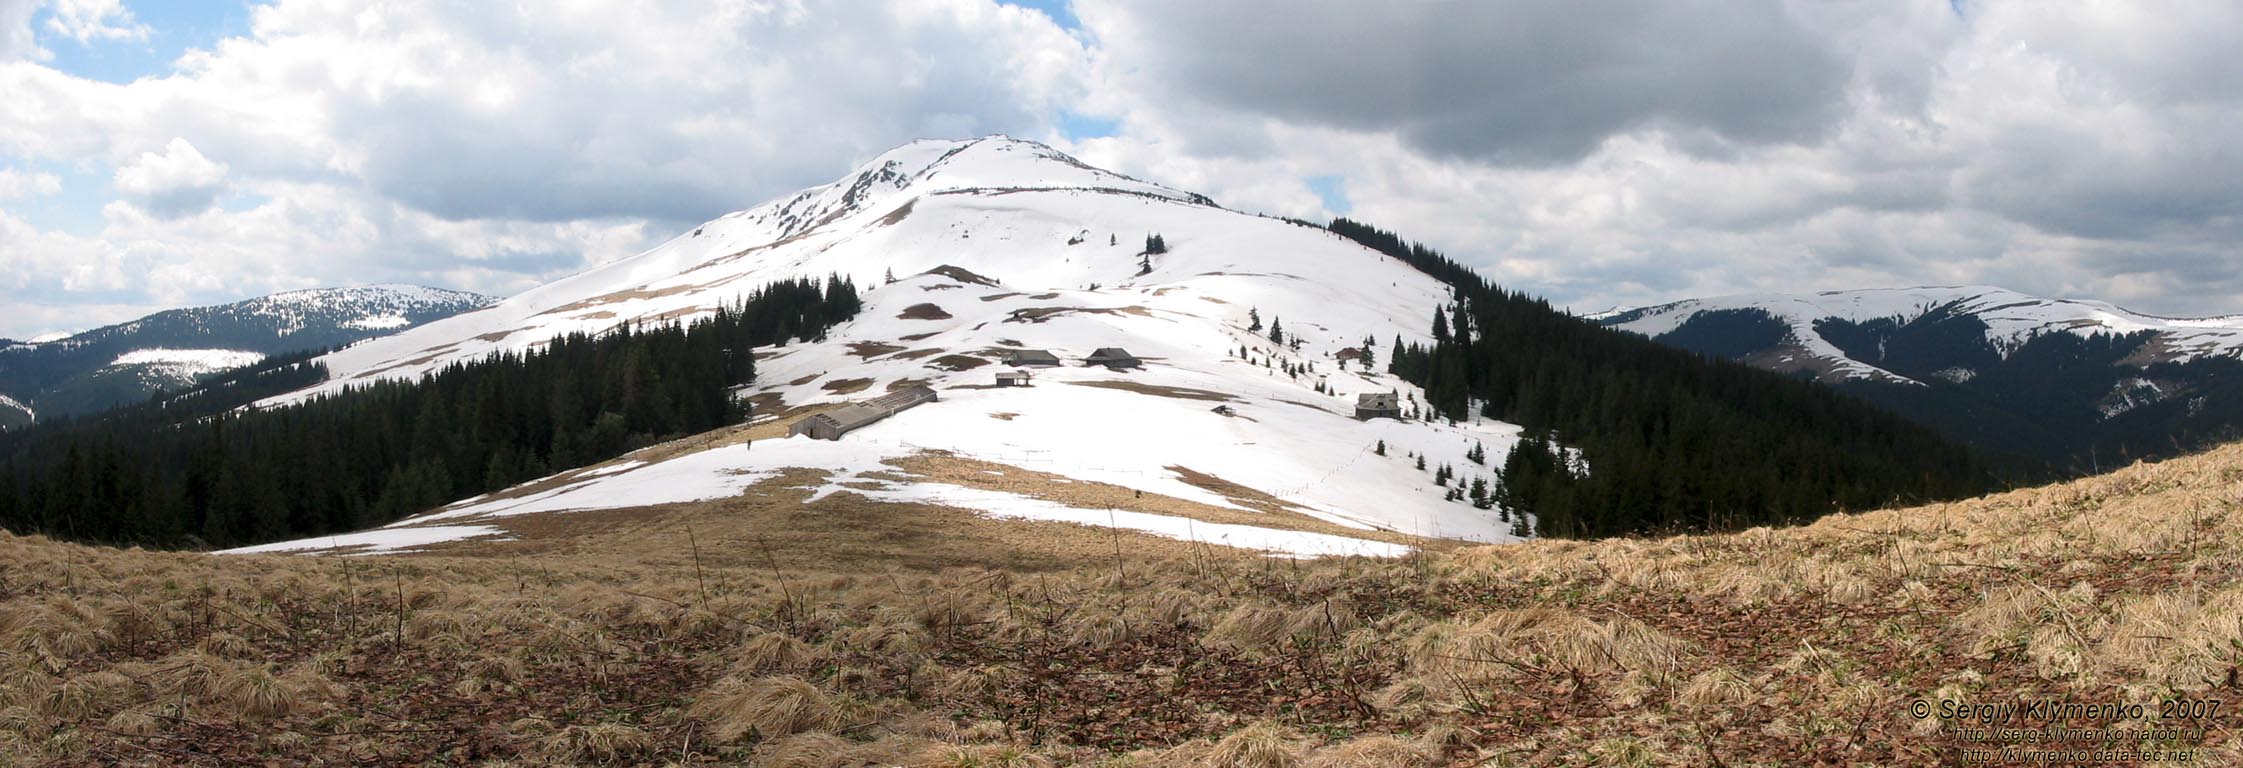 Фото Карпат, вид на вершину горы Чивчин с хребта между потоками Добрын и Альбин.